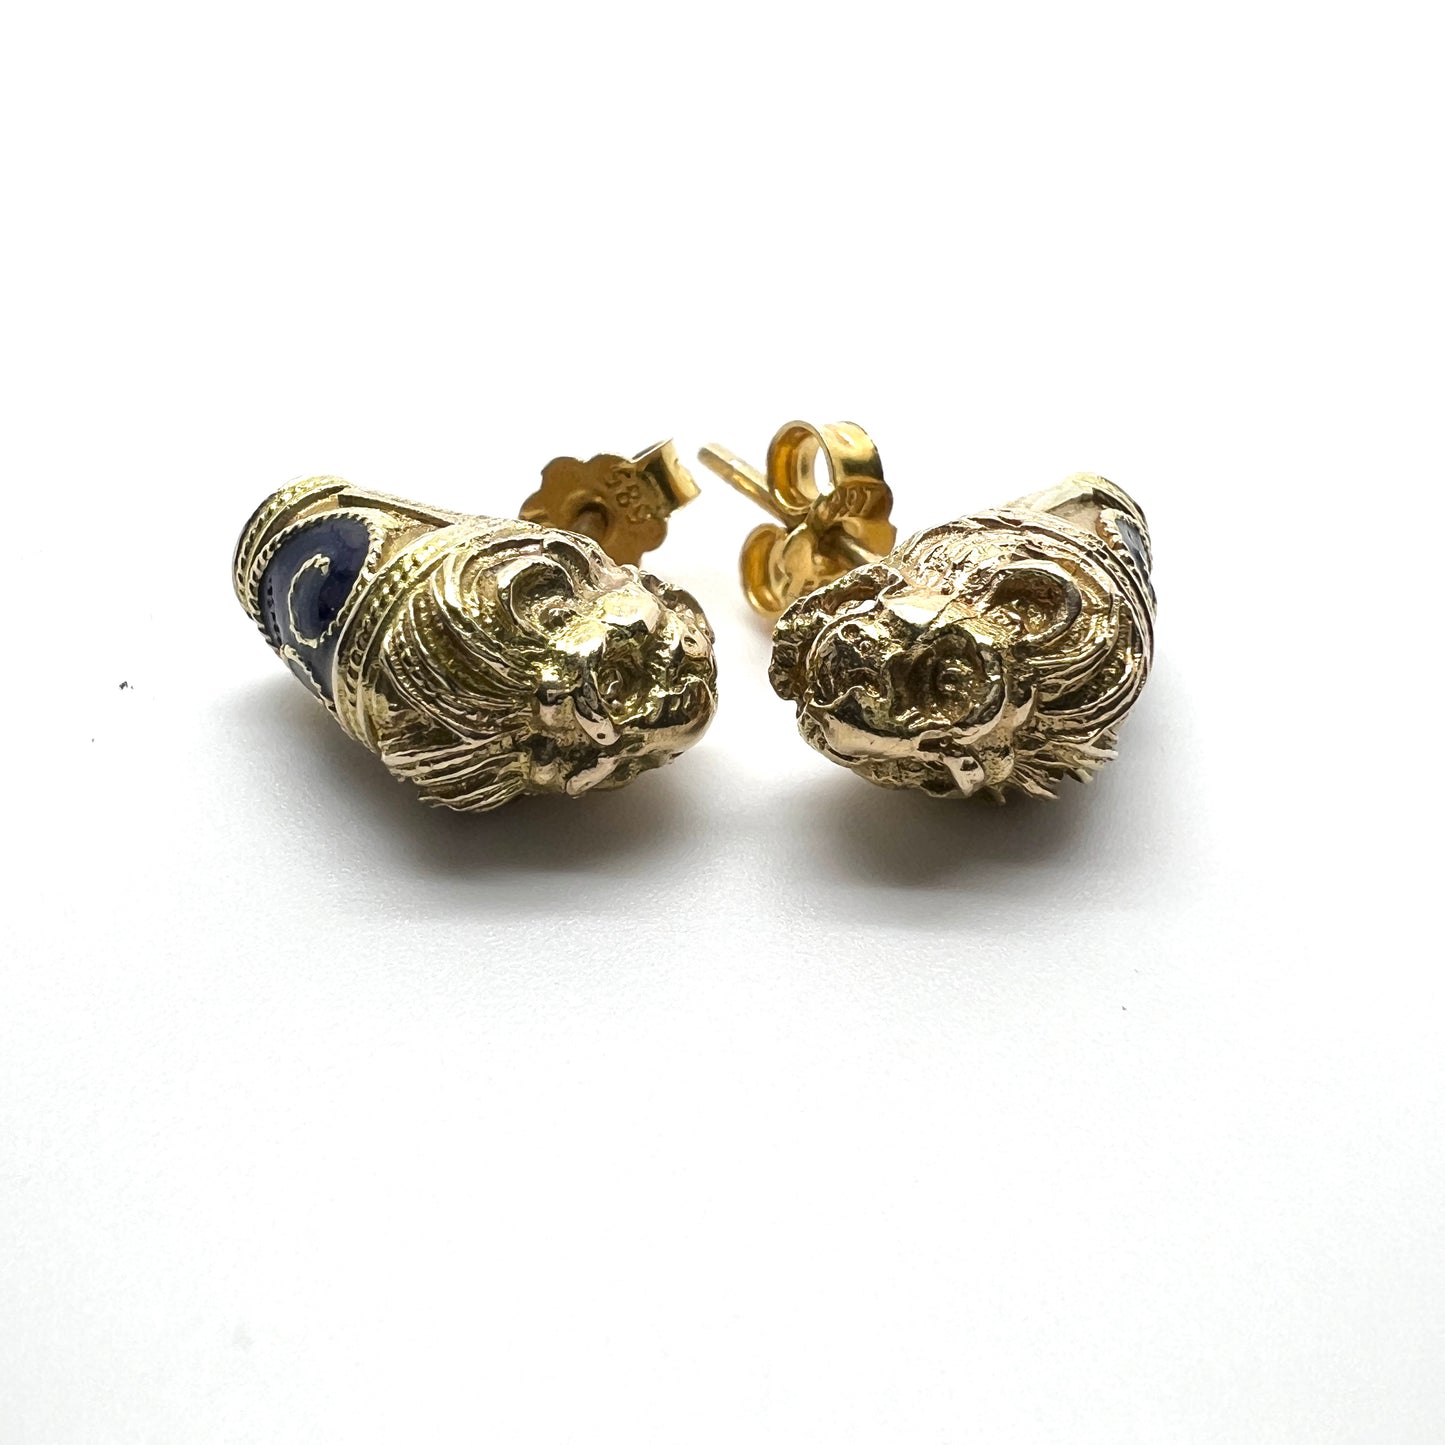 South Asia Vintage 14k Gold Dark Blue Enamel Lion's Head Pair of Stud Earrings.